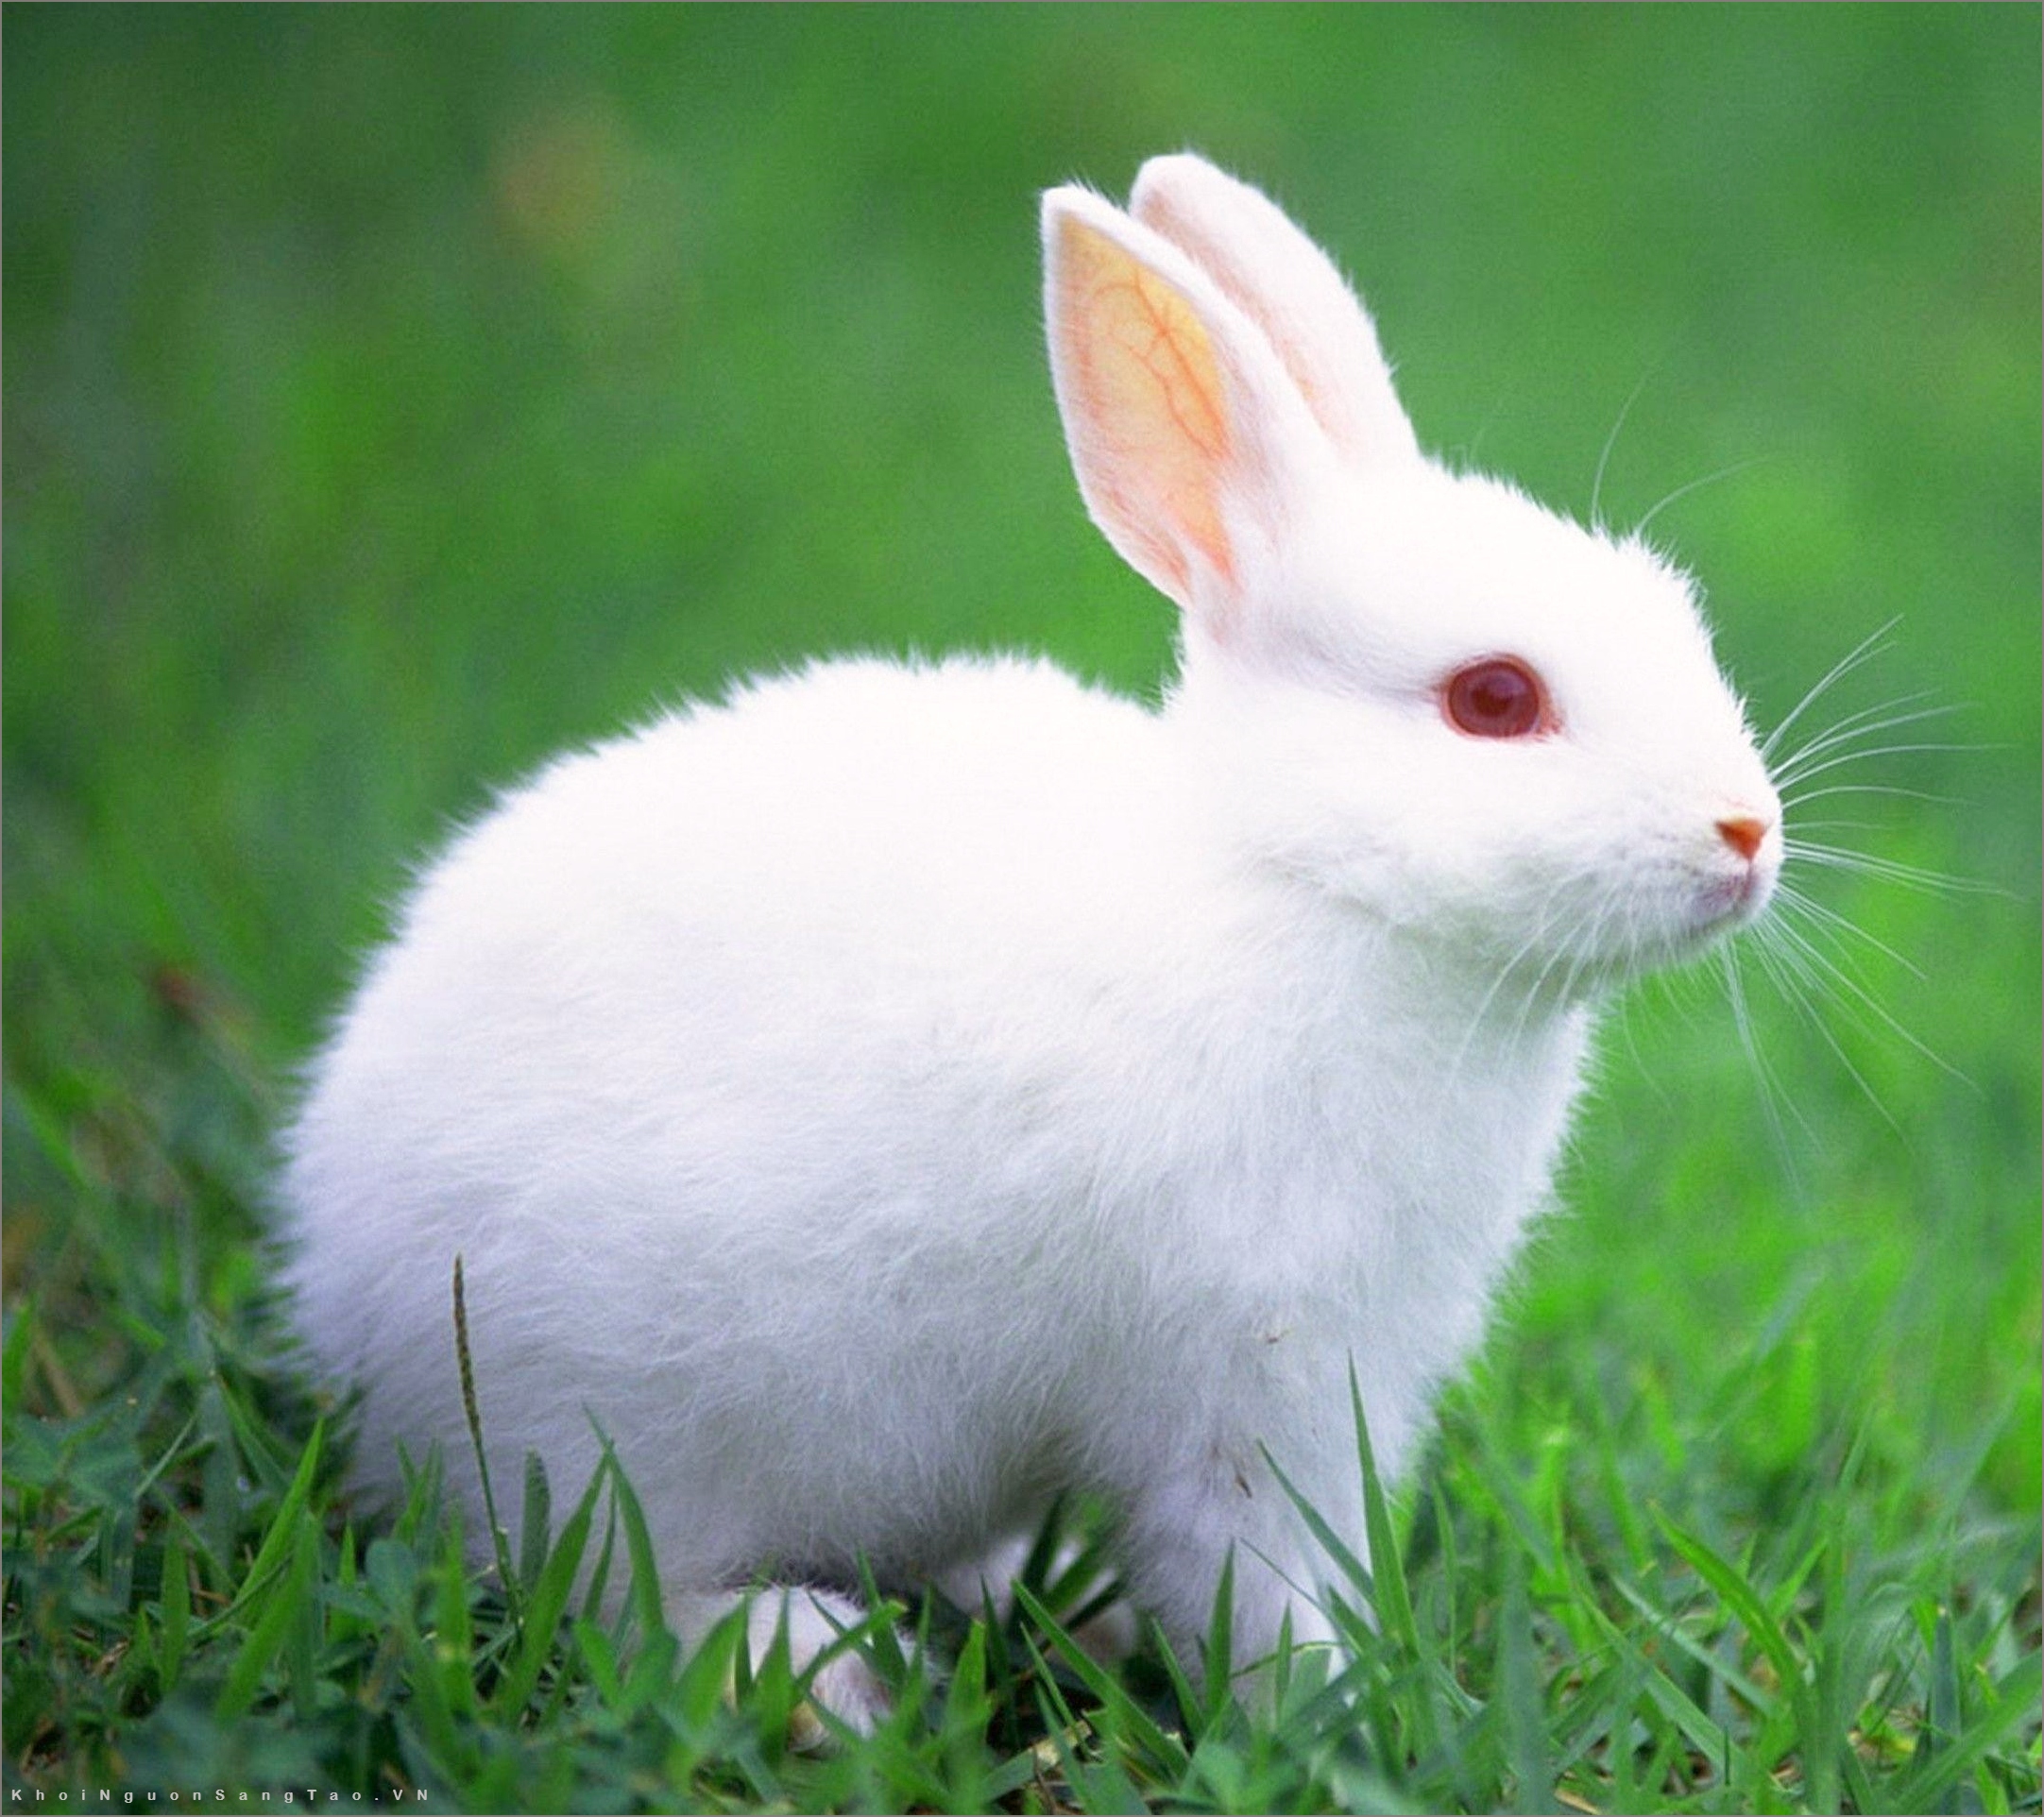 Chúng ta không thể không cười khi nhìn thấy những hình ảnh con thỏ đẹp cute. Với bộ lông mềm mại, đôi tai dài và vẻ đáng yêu, chúng sẽ làm người xem cảm thấy thật tuyệt vời.